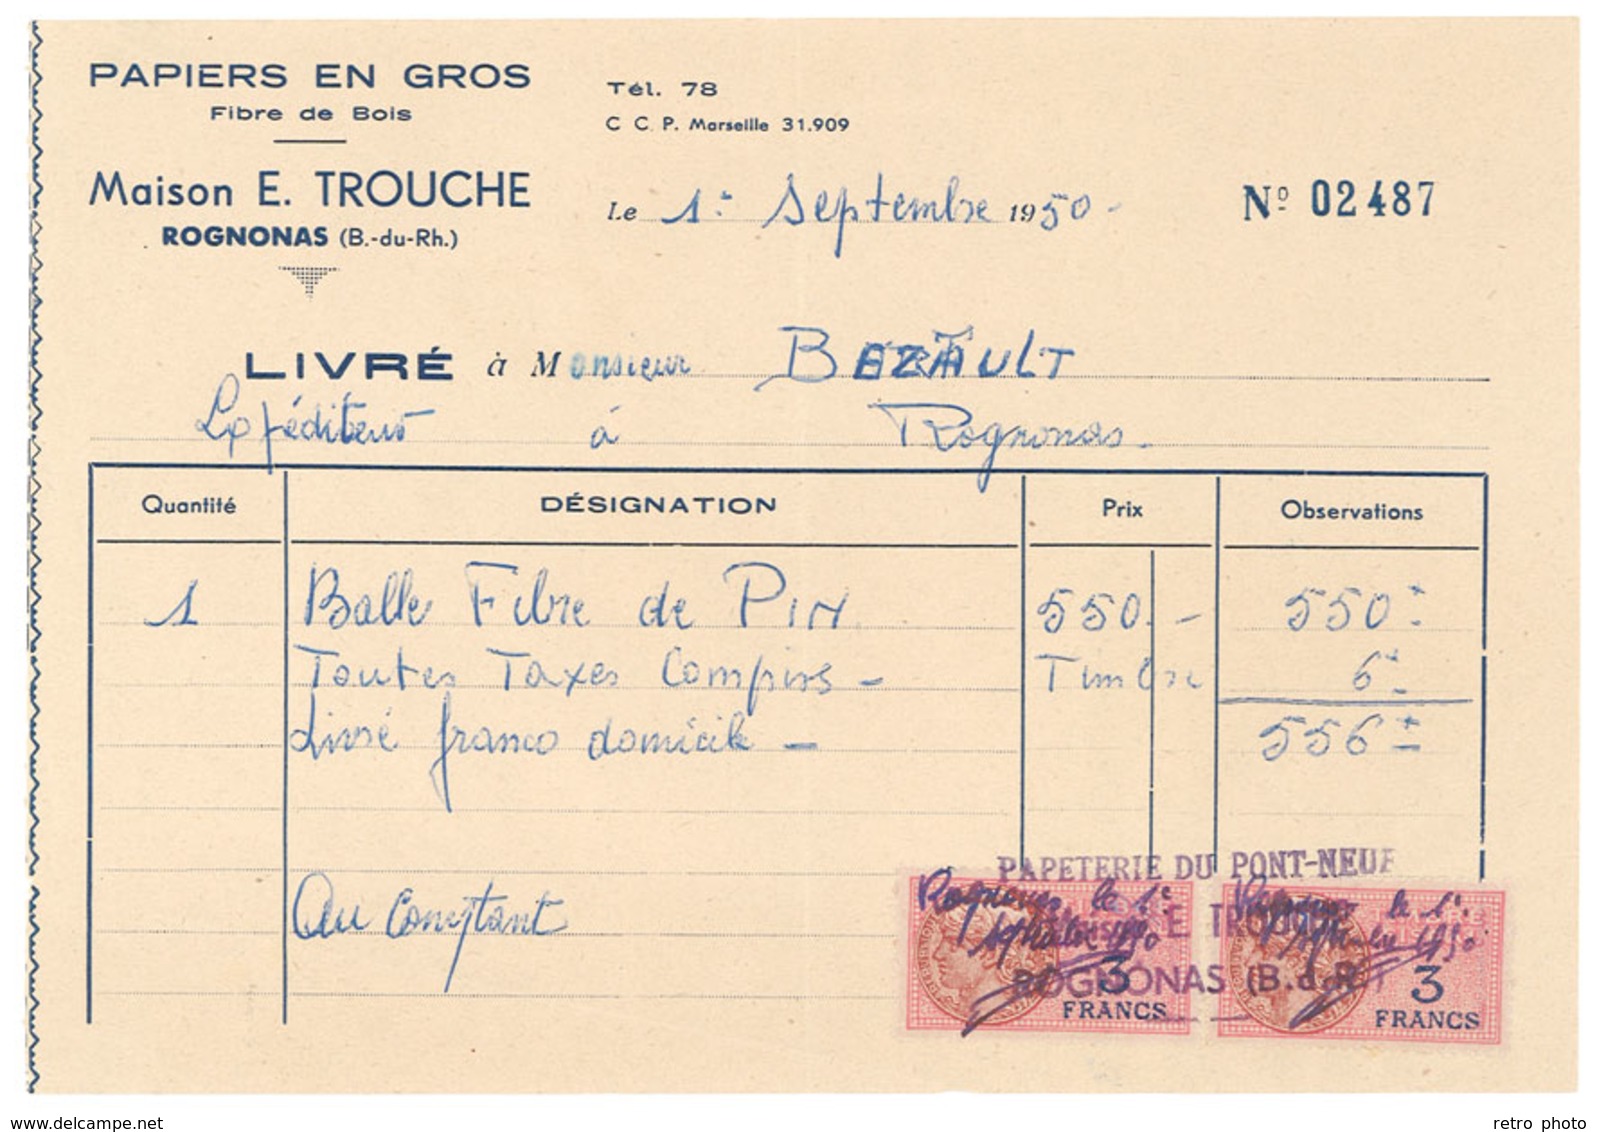 Vieux Papier Rognonas Facture, Maison E. Trouche, Papiers En Gros, Timbres Fiscaux 3 Francs, Papeterie Pont Neuf - 1950 - ...